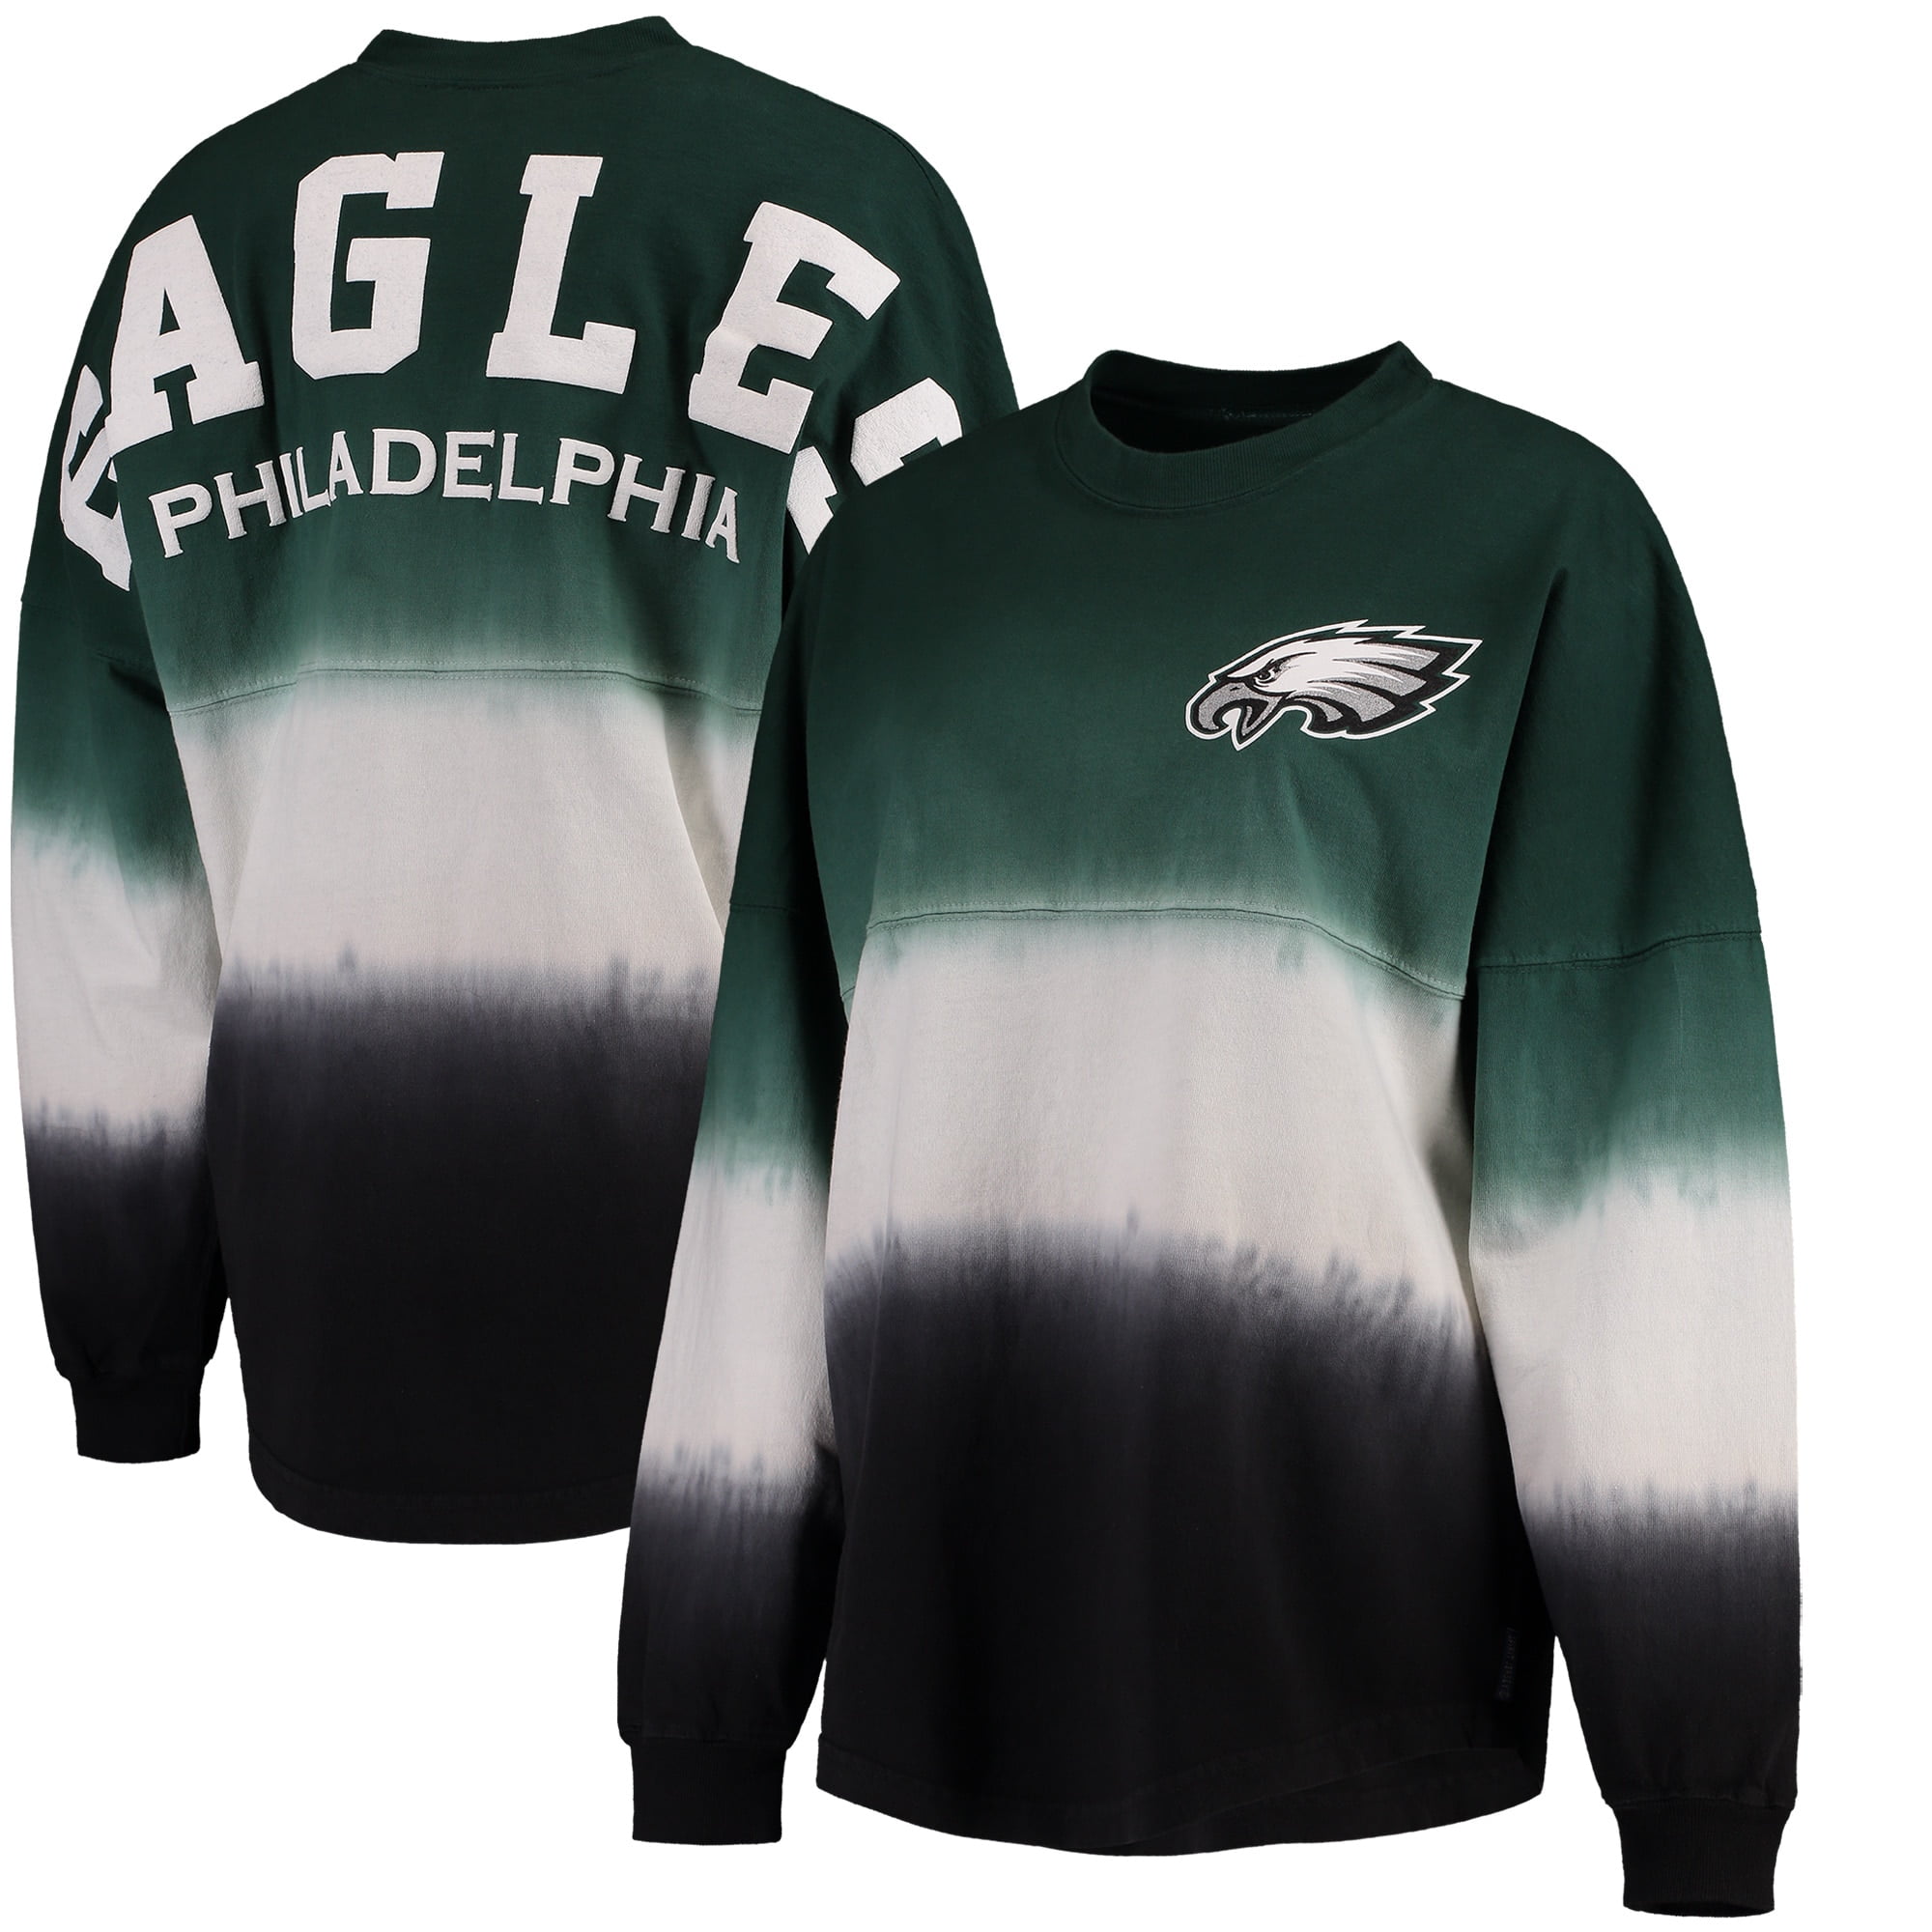 philadelphia eagles jersey for women